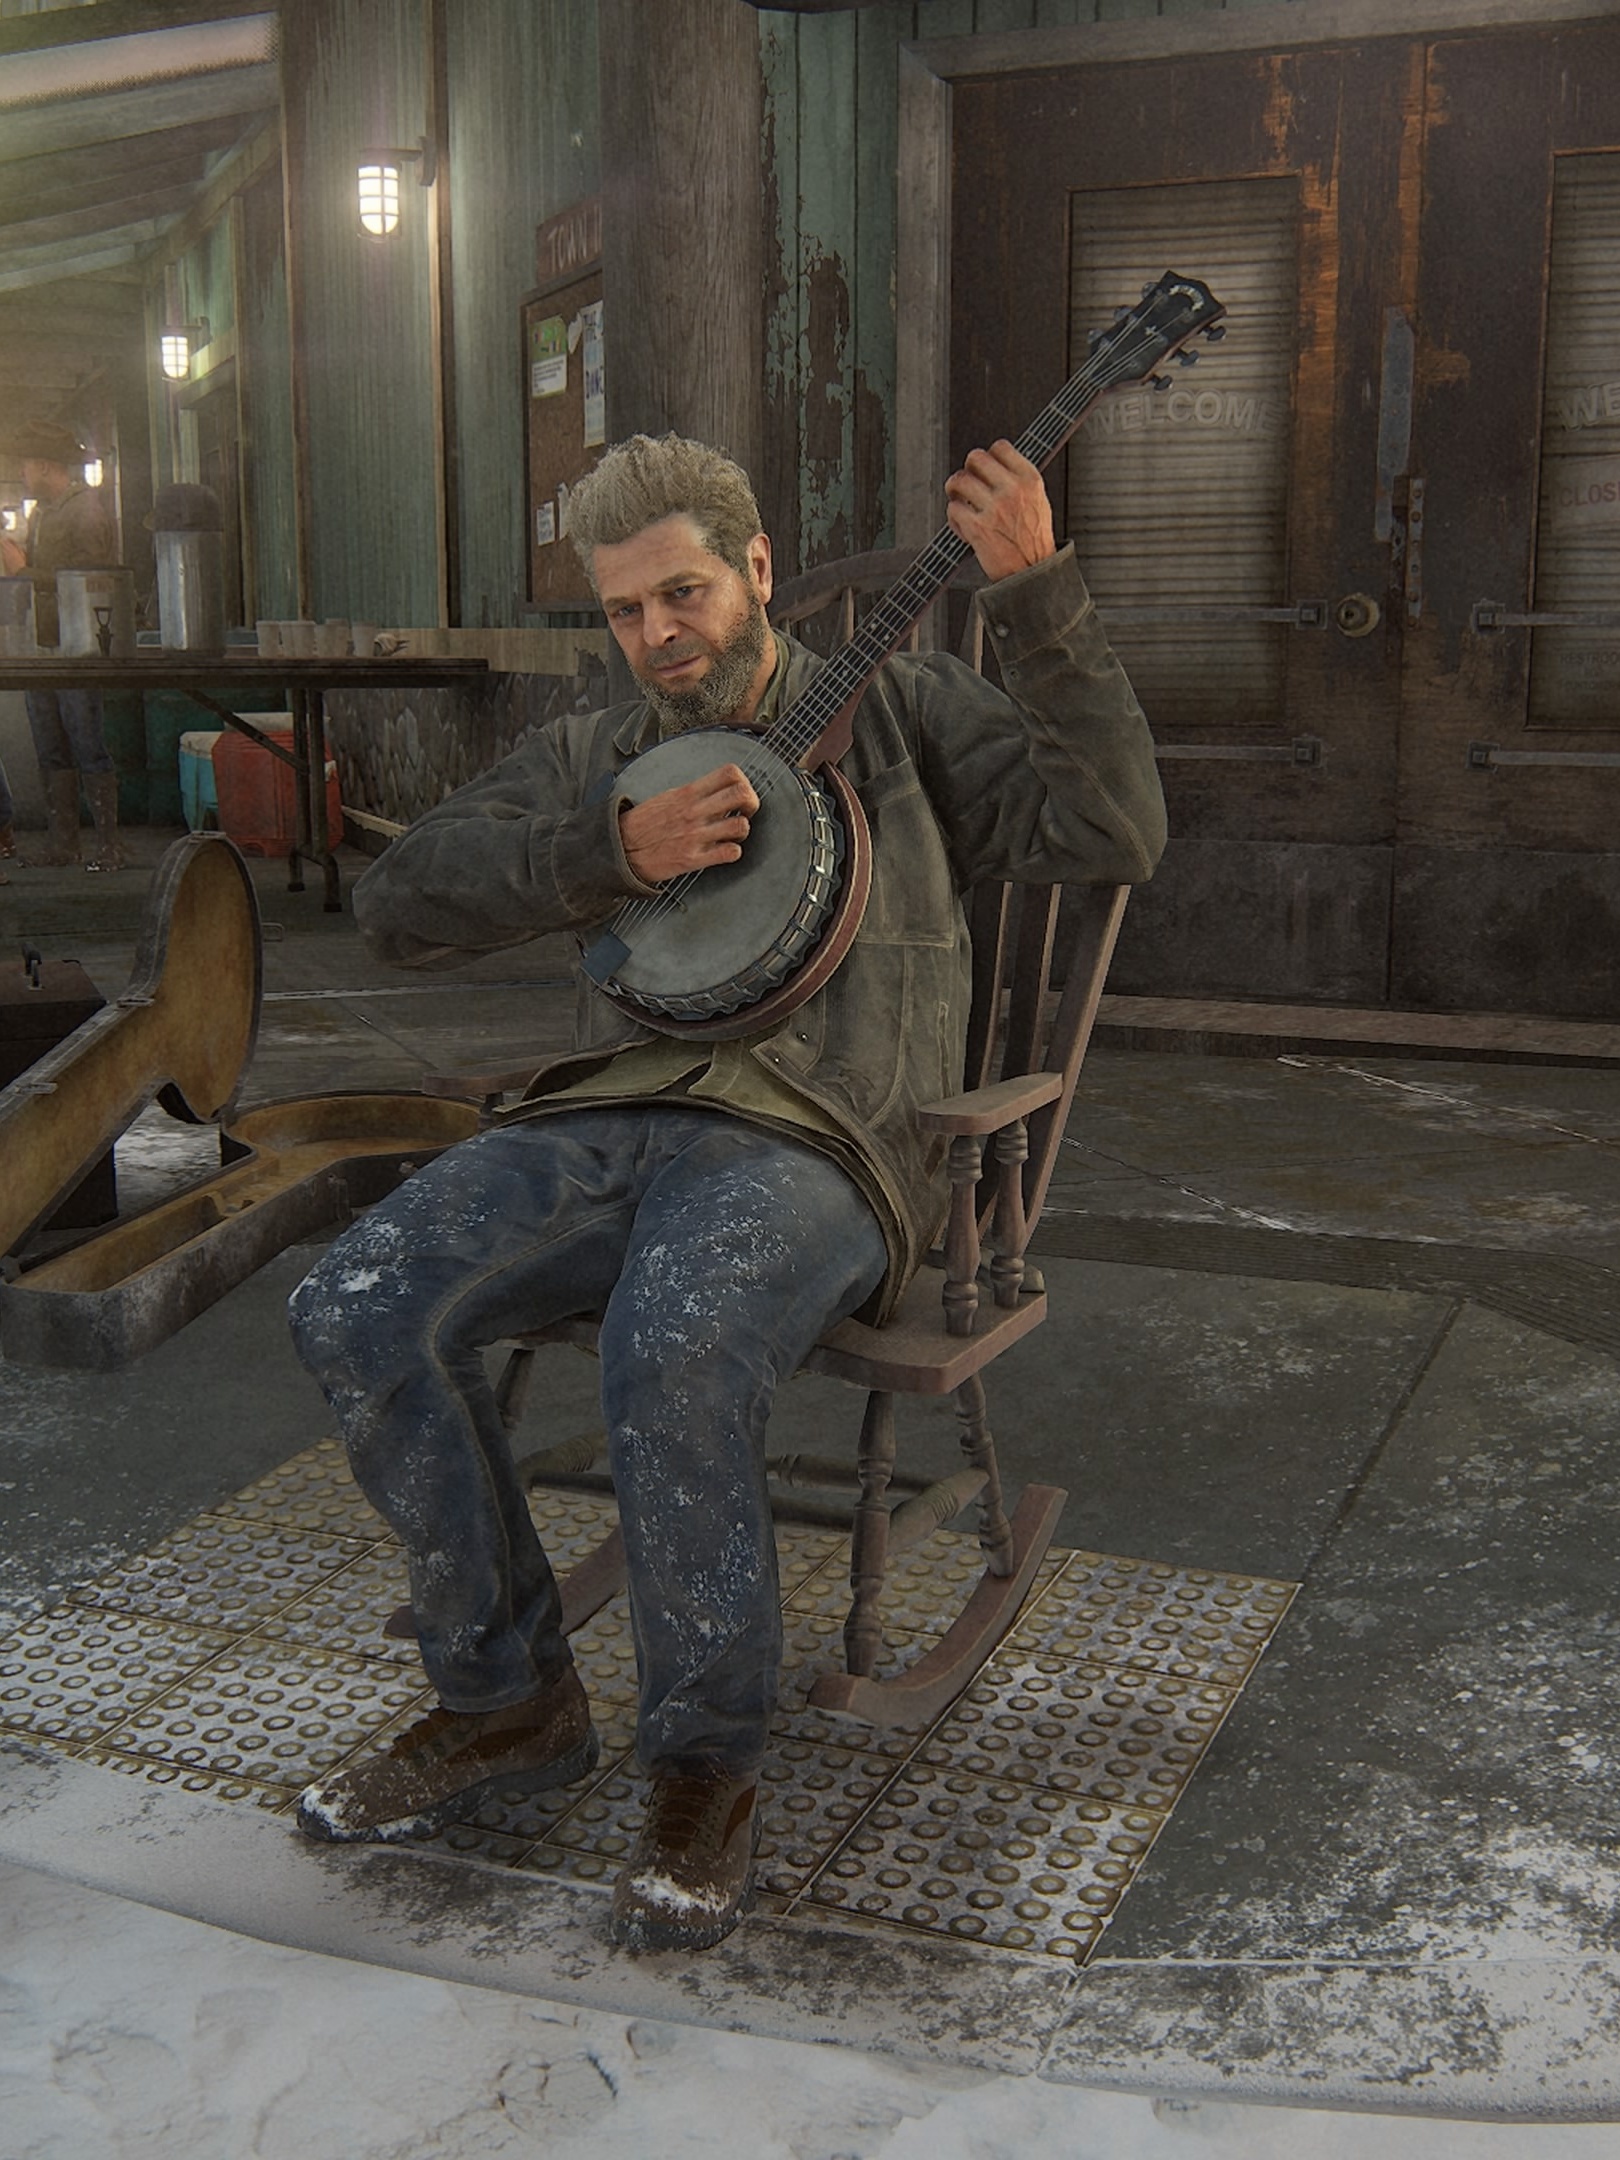 The Last of Us 2: homenagem feita em jogo de futebol